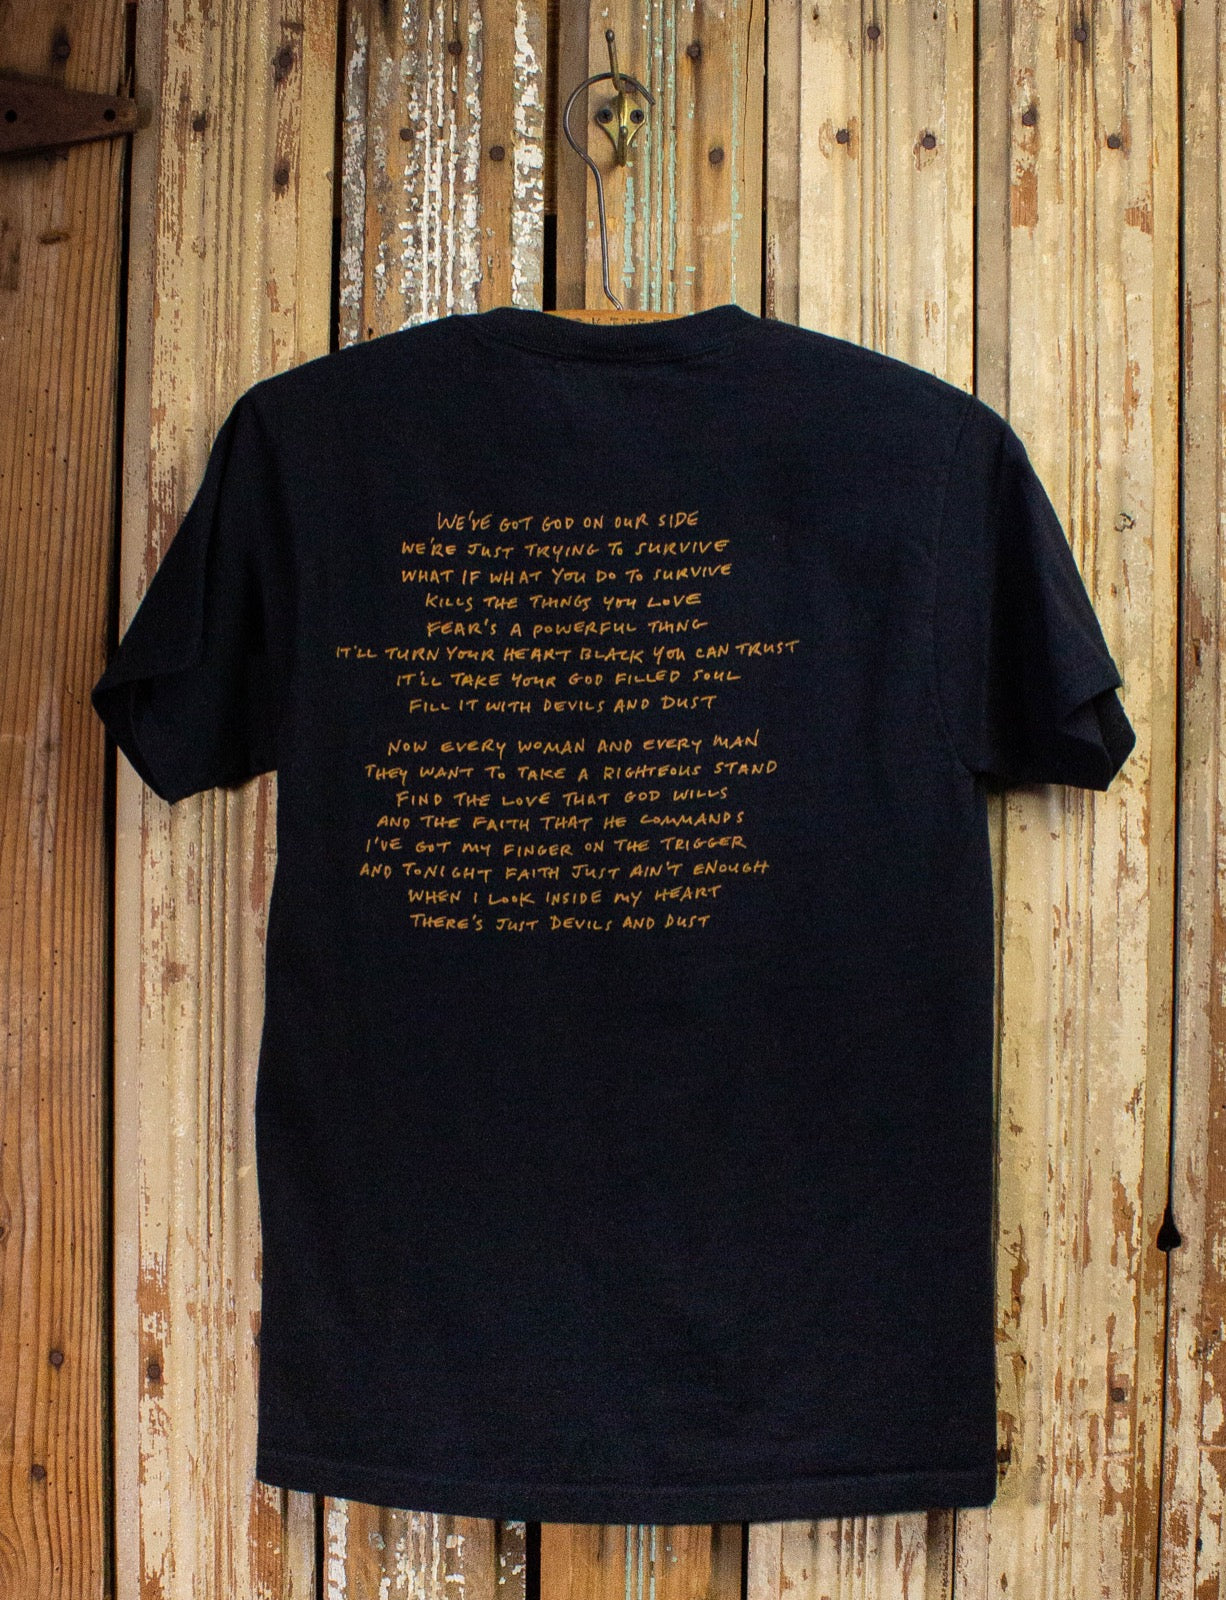 Vintage Bruce Springsteen Devils & Dust Concert T Shirt 2003 Black Small